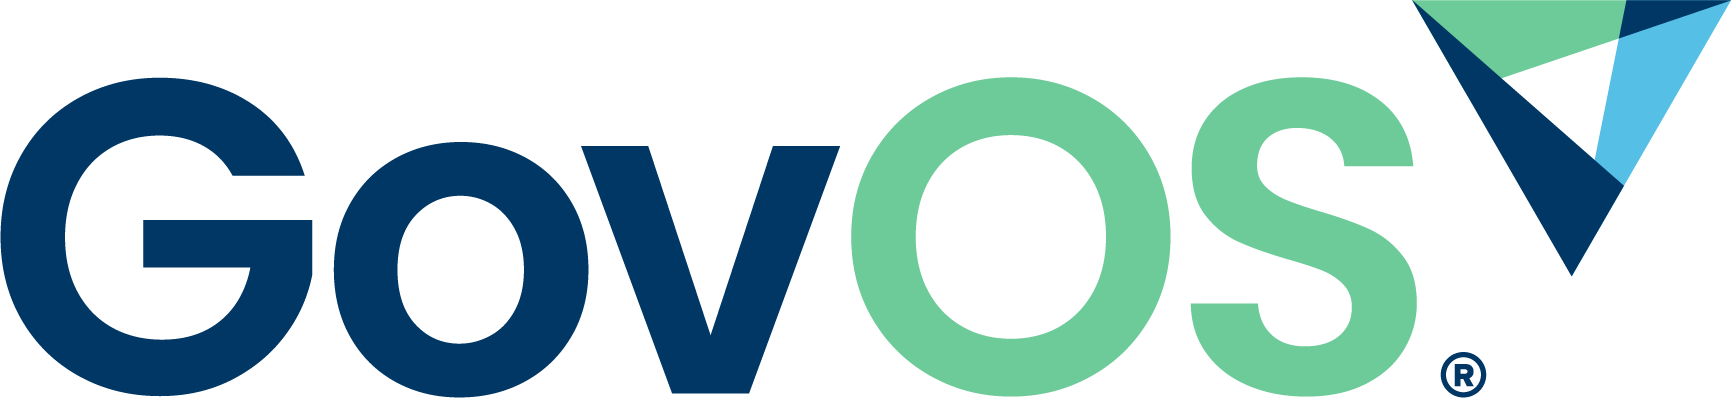 GovOS's logo